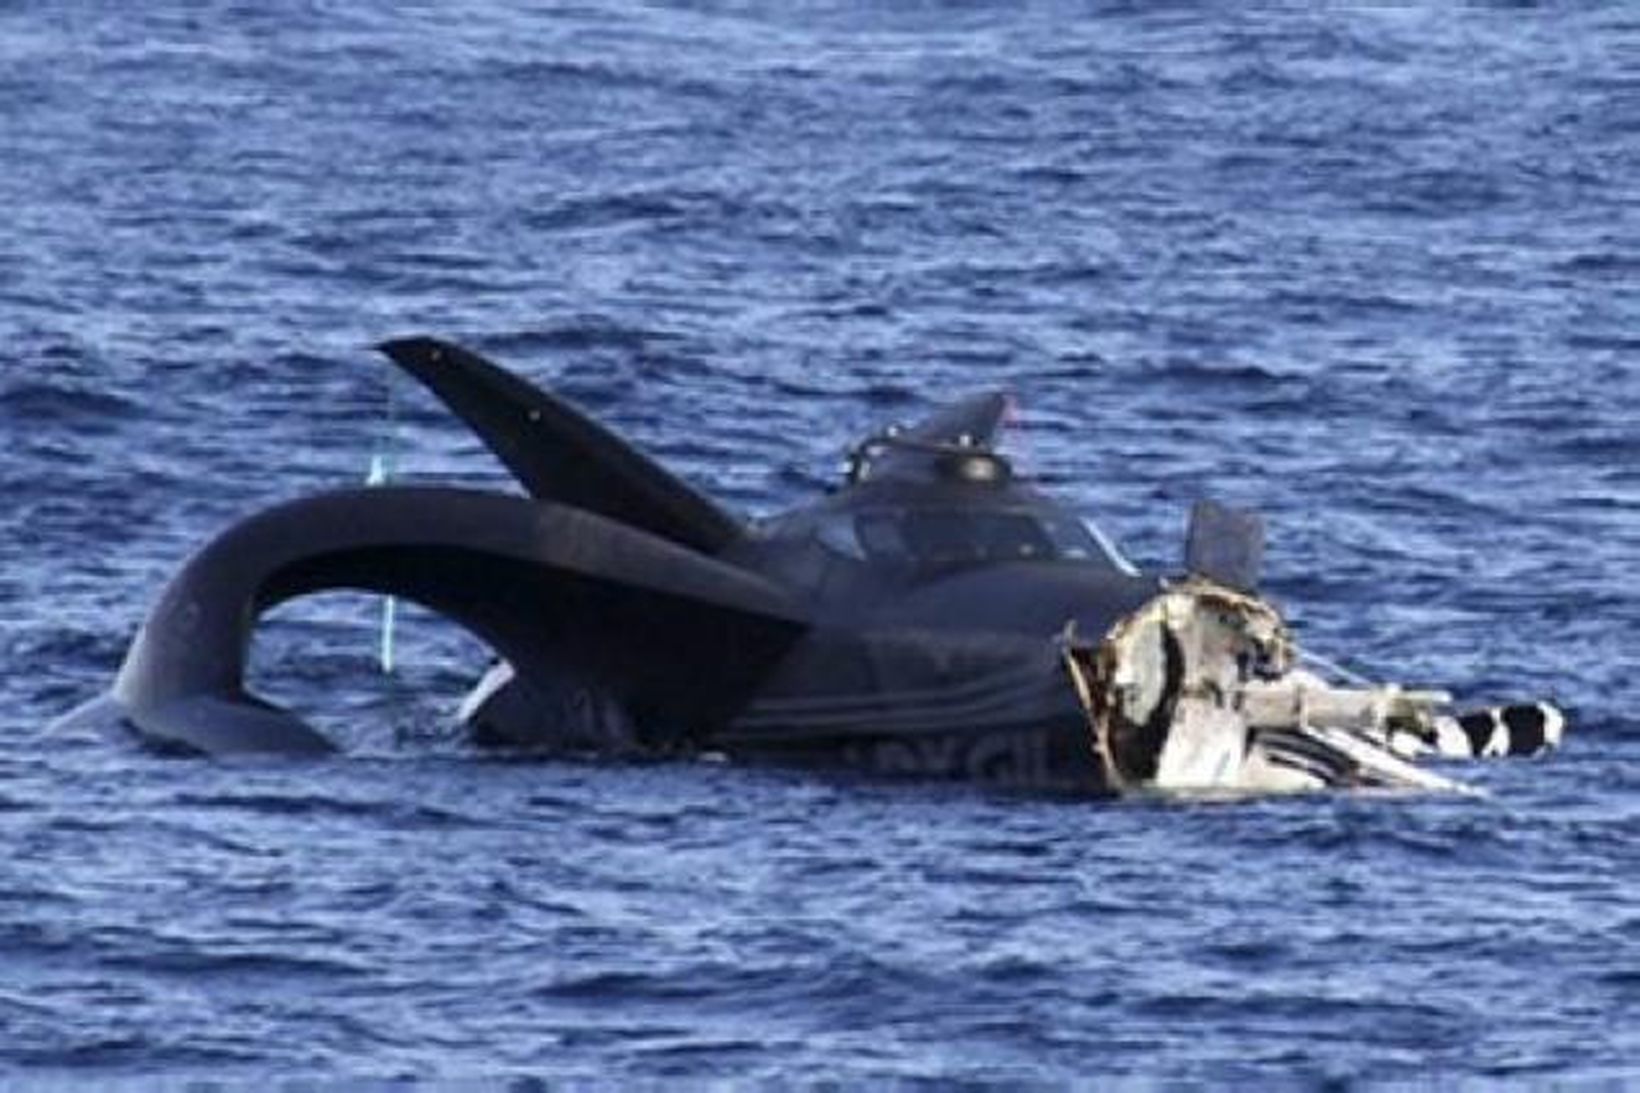 Ady Gil, bátur Sea Shepherd, sökk eftir að hvalveiðiskip sigldi …